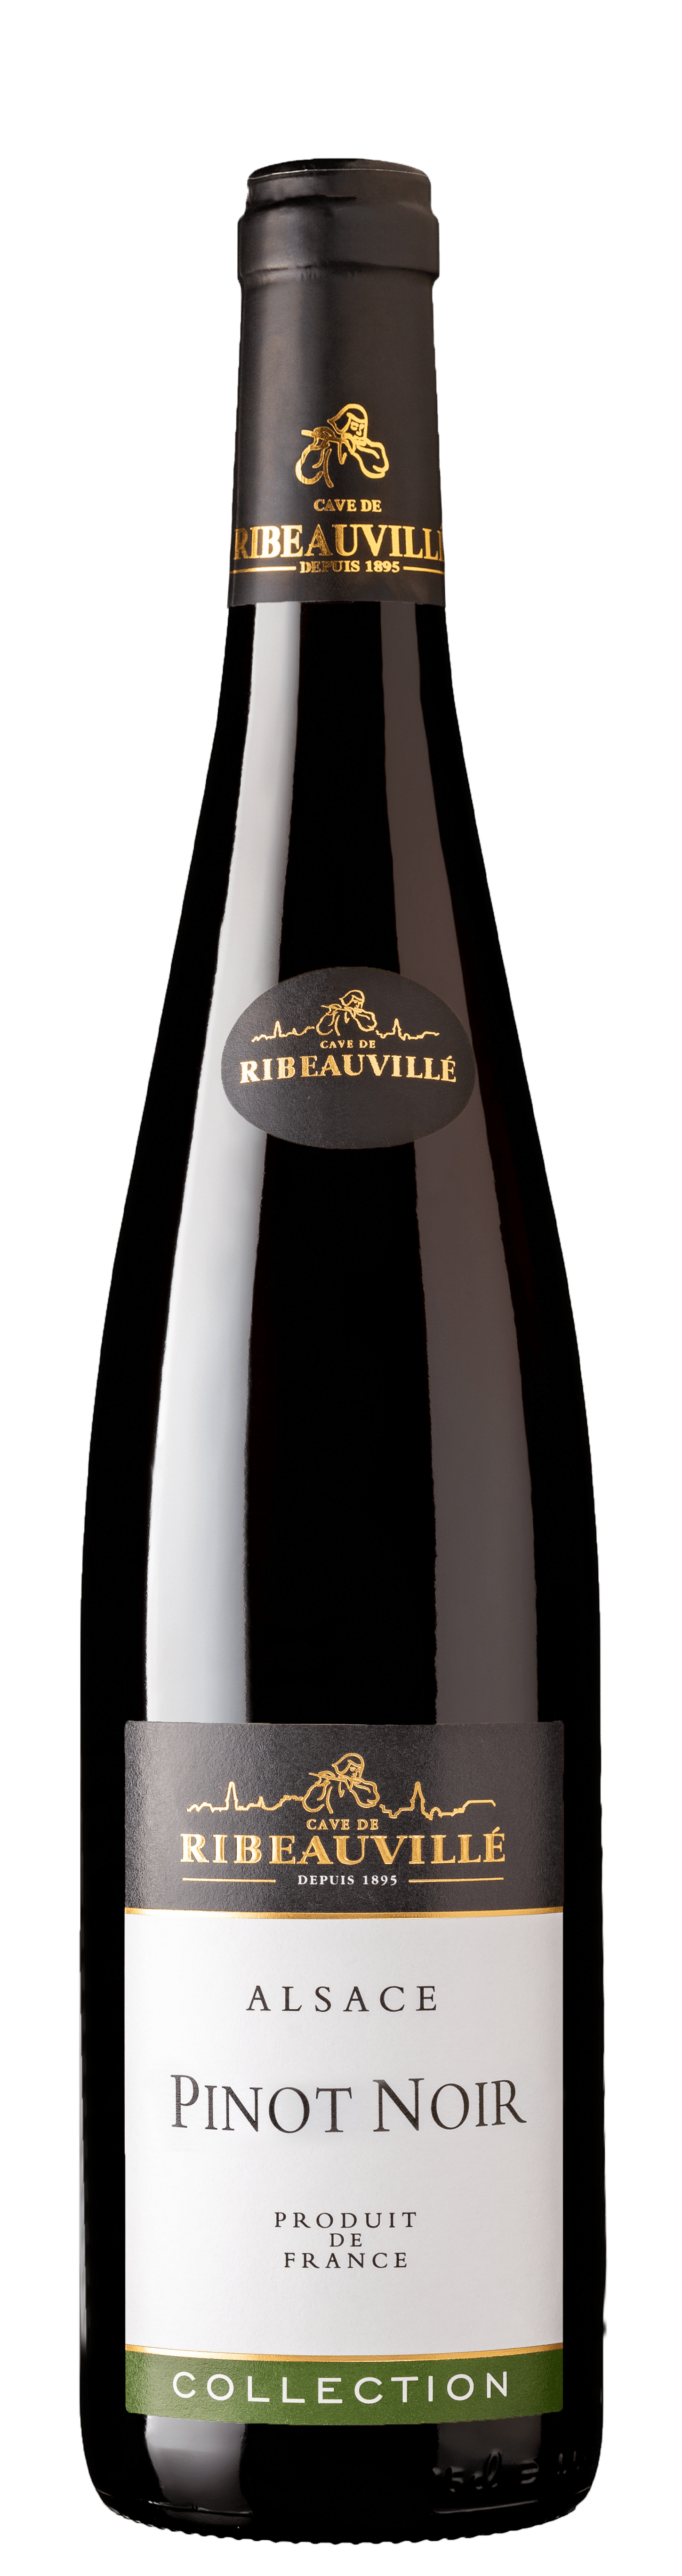 Bouteille de Pinot Noir Collection, Cave de Ribeauvillé